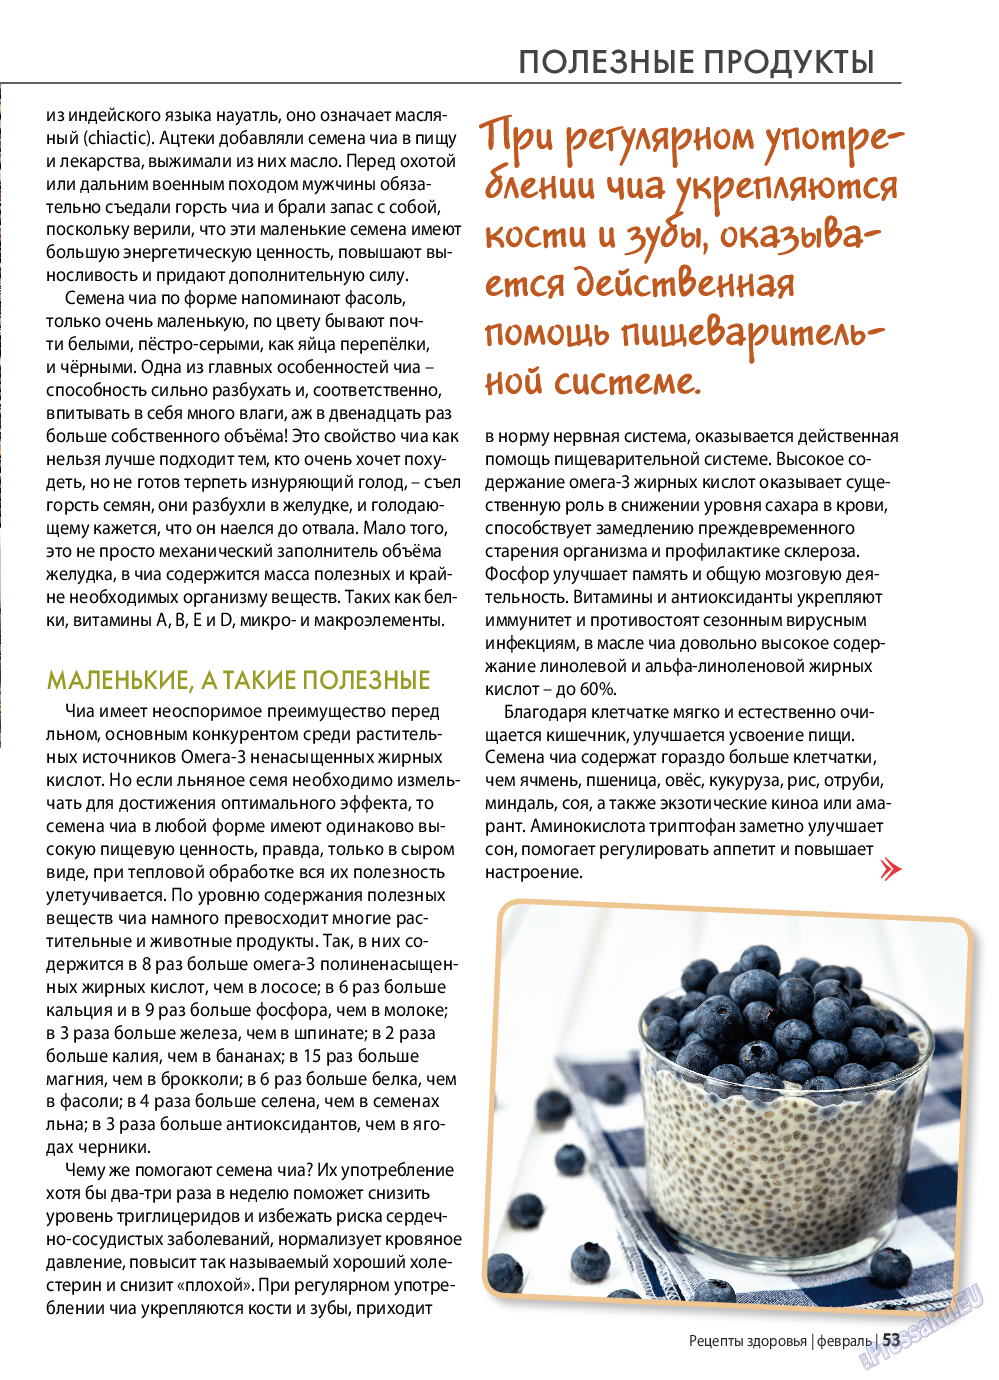 Рецепты здоровья (журнал). 2022 год, номер 153, стр. 53